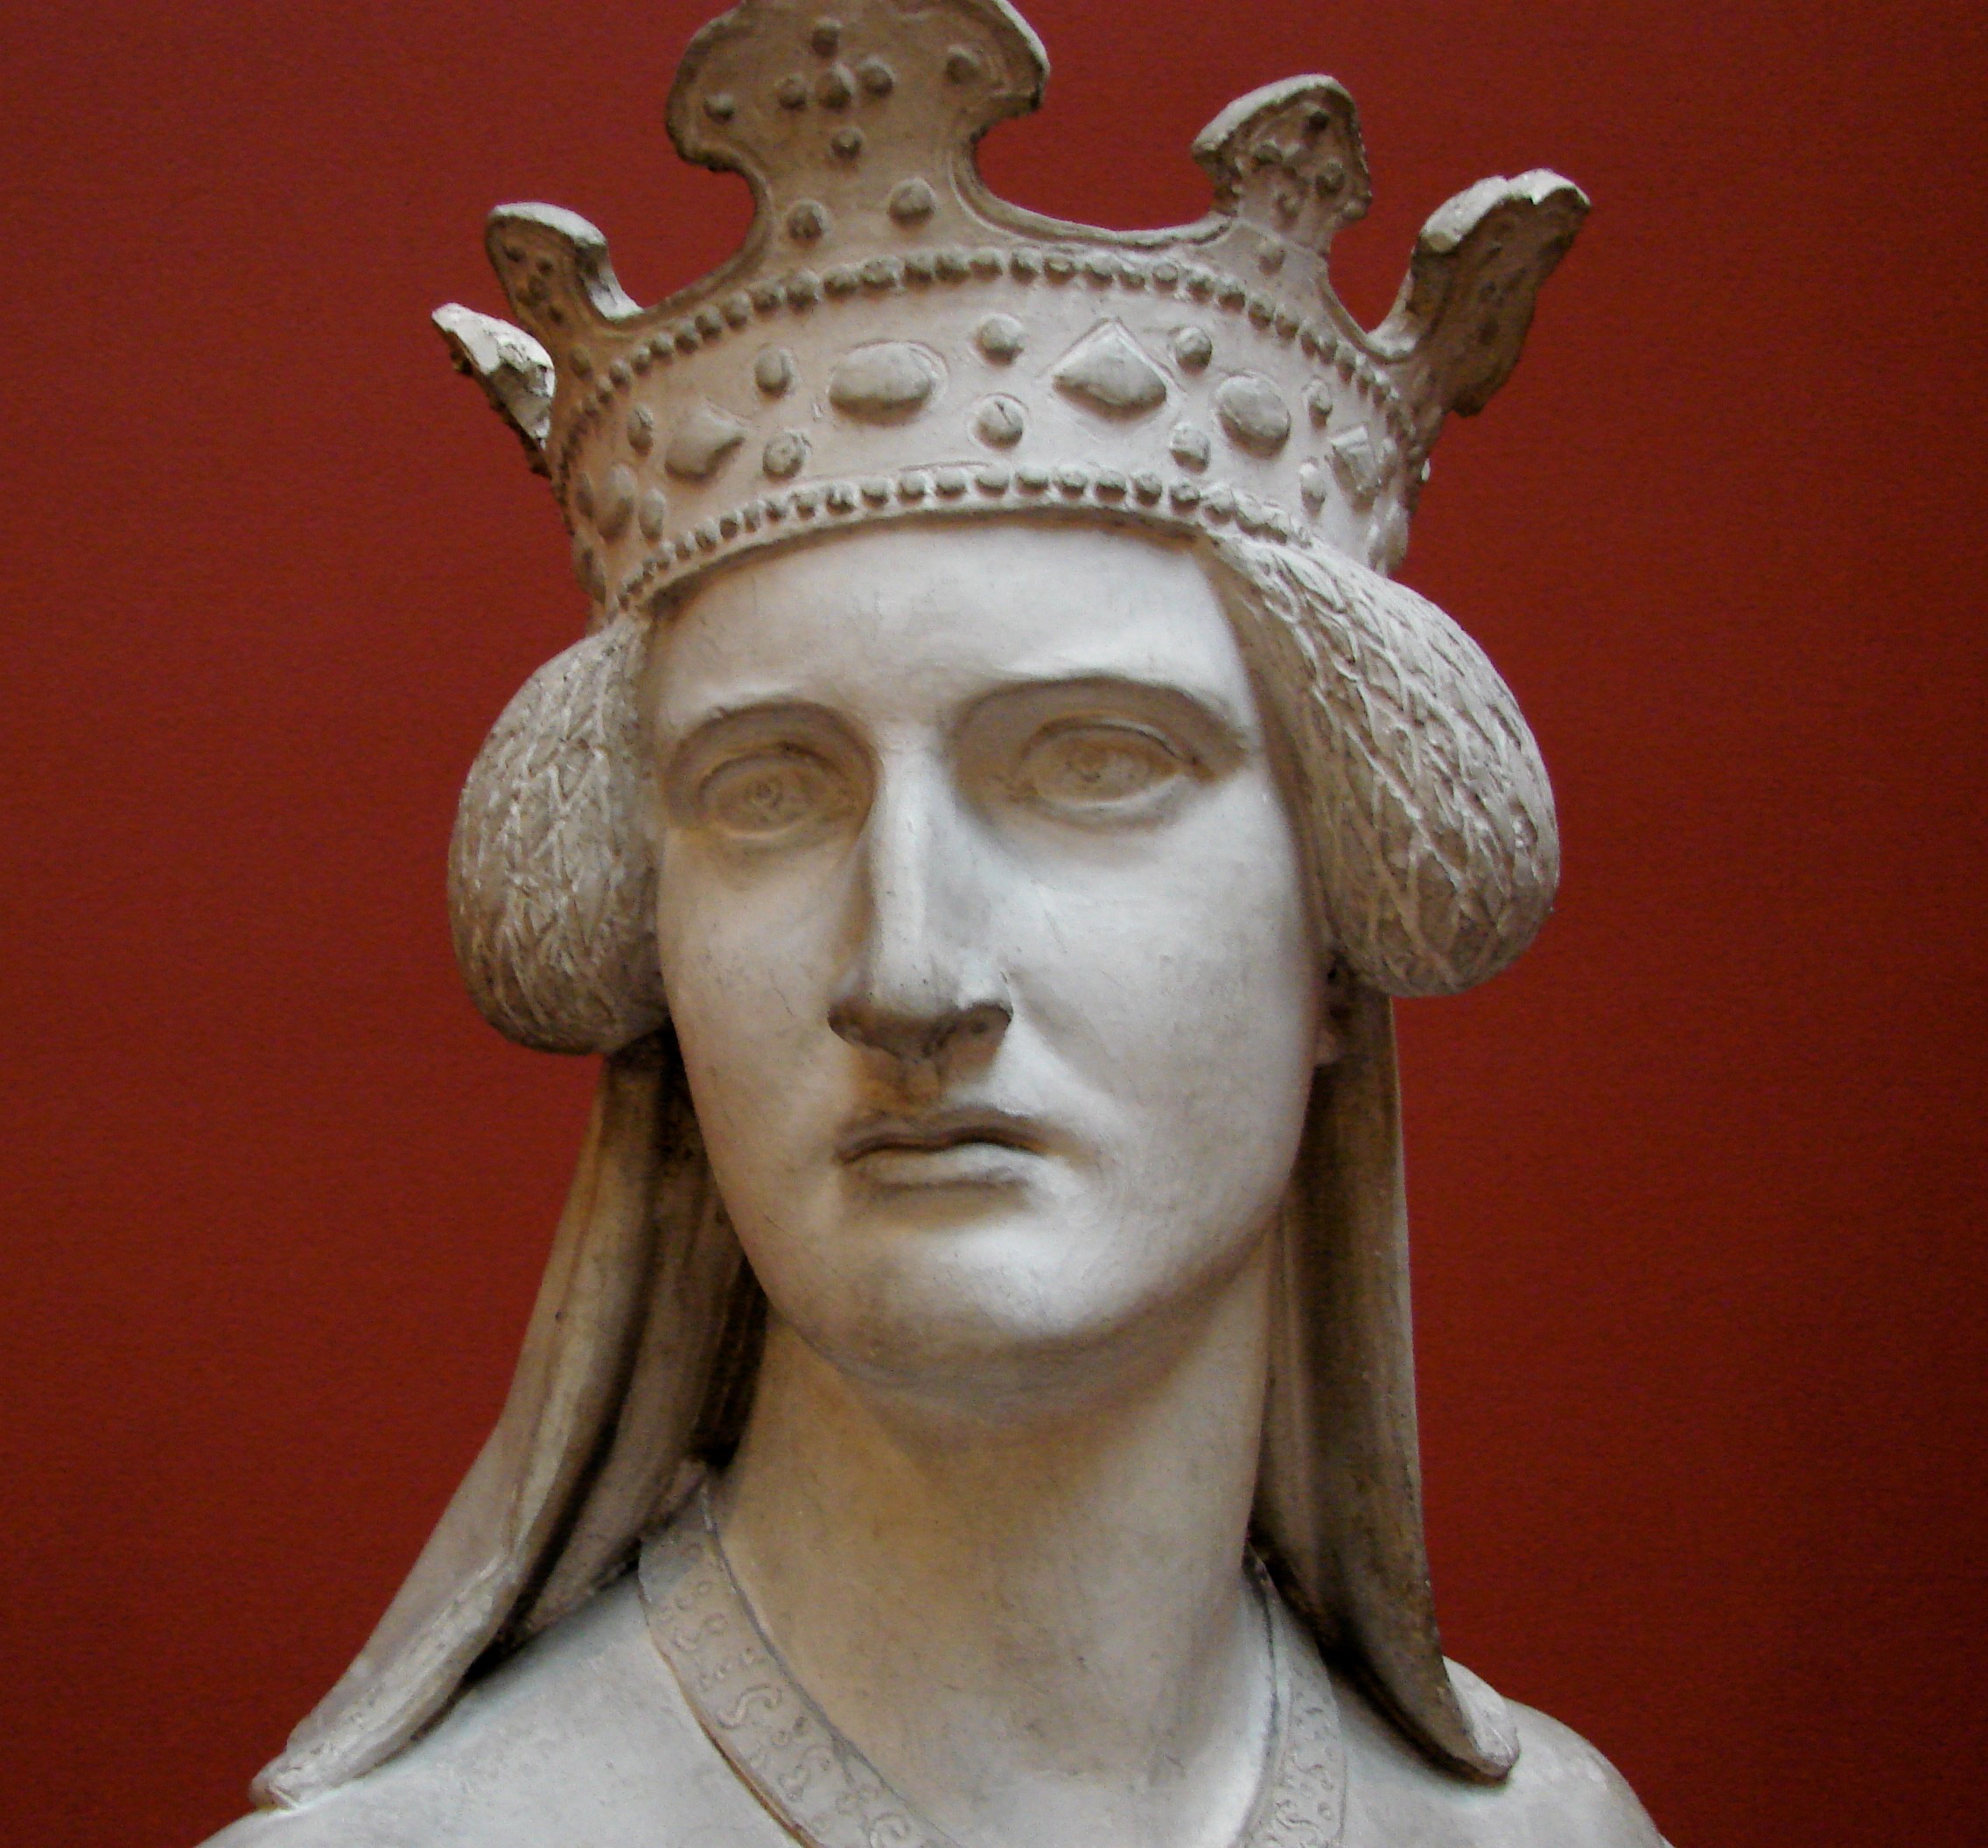 Drottning Filippa, detalj från skulptur av H W Bissen, Ny Carlsberg Glyptotek, Köpenhamn. Fotograf: Orf3us, beskuren, CCBY-SA 3.0